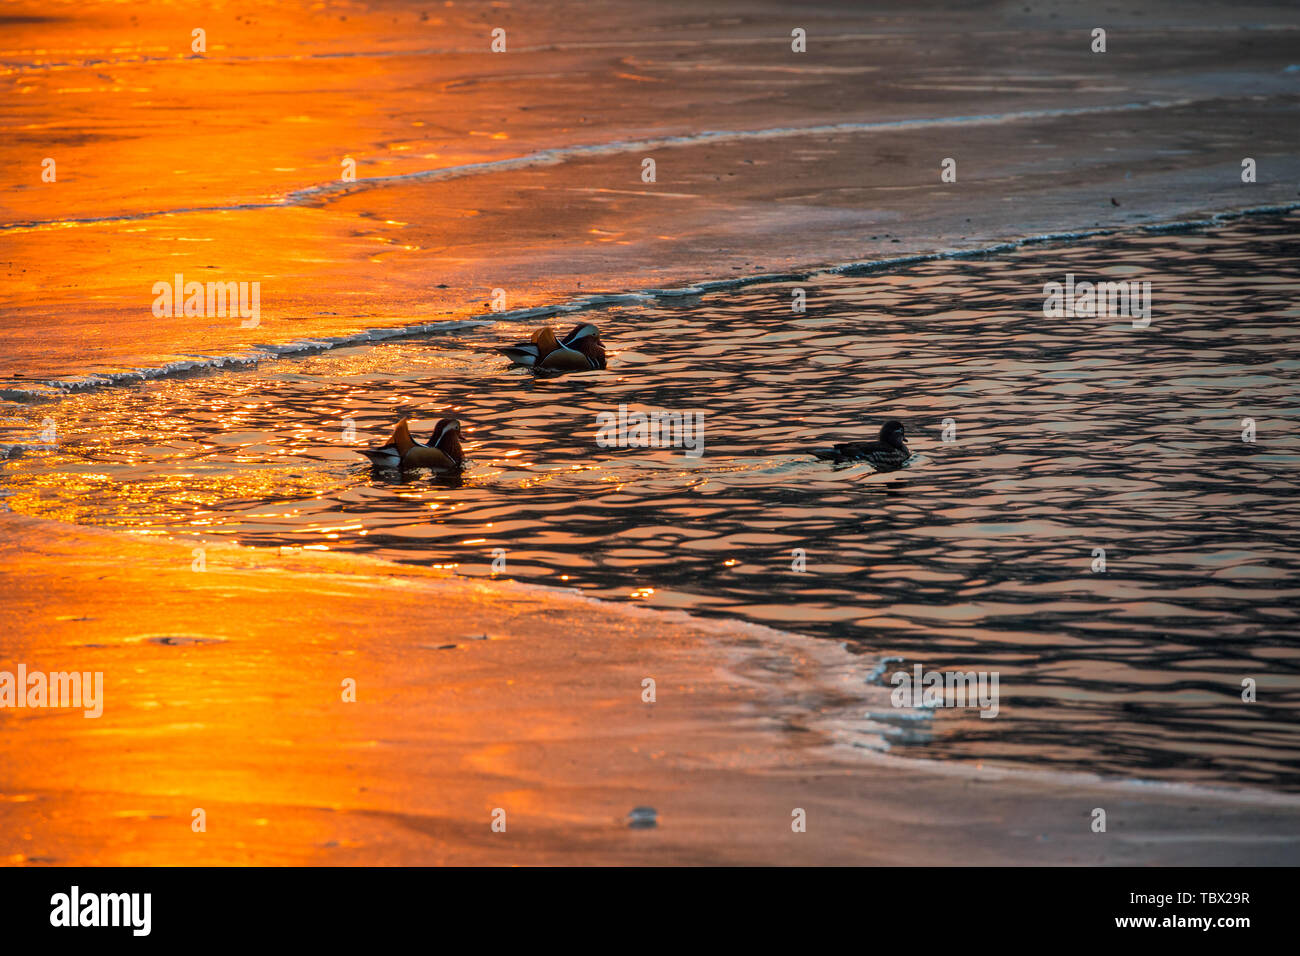 Den See und Eis in der Sonne funkelten wie Sonnenuntergang geschmolzenes Gold und das Mandarin Enten auf dem See nicht ins Wasser springen munter zu jagen. Stockfoto